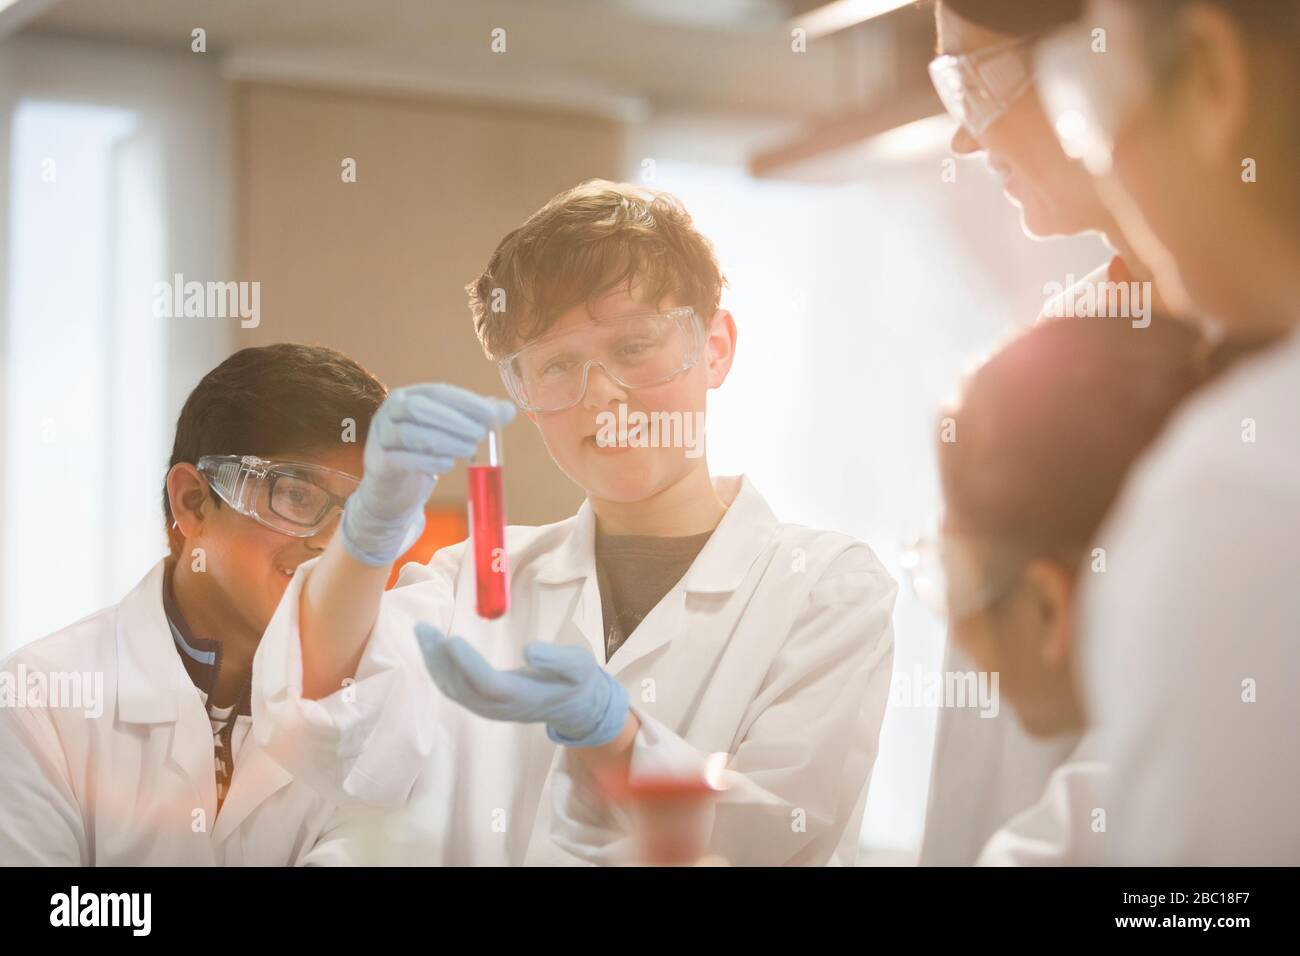 Studenti che esaminano il liquido nella provetta, conducendo esperimenti scientifici in classe di laboratorio Foto Stock